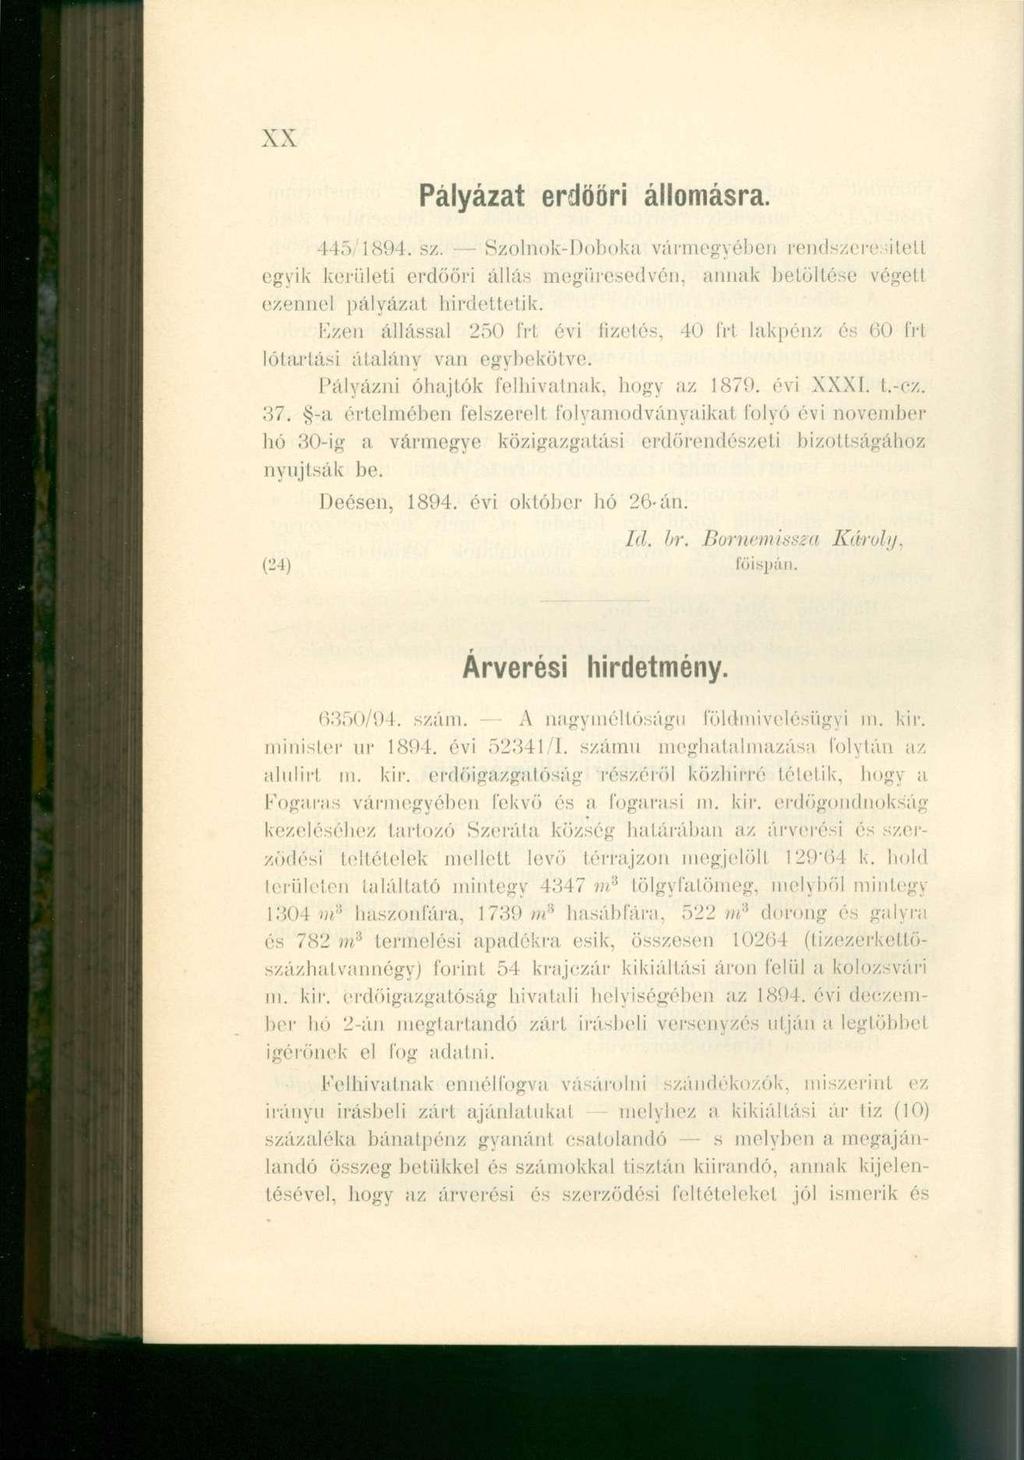 XX Pályázat erdöör i állomásra. 445,1894. sz. Szolnok-Doboka vármegyében rendszeresített egyik kerületi erdőőri állás megüresedvén, annak betöltése végell ezennel pályázat hirdettetik.